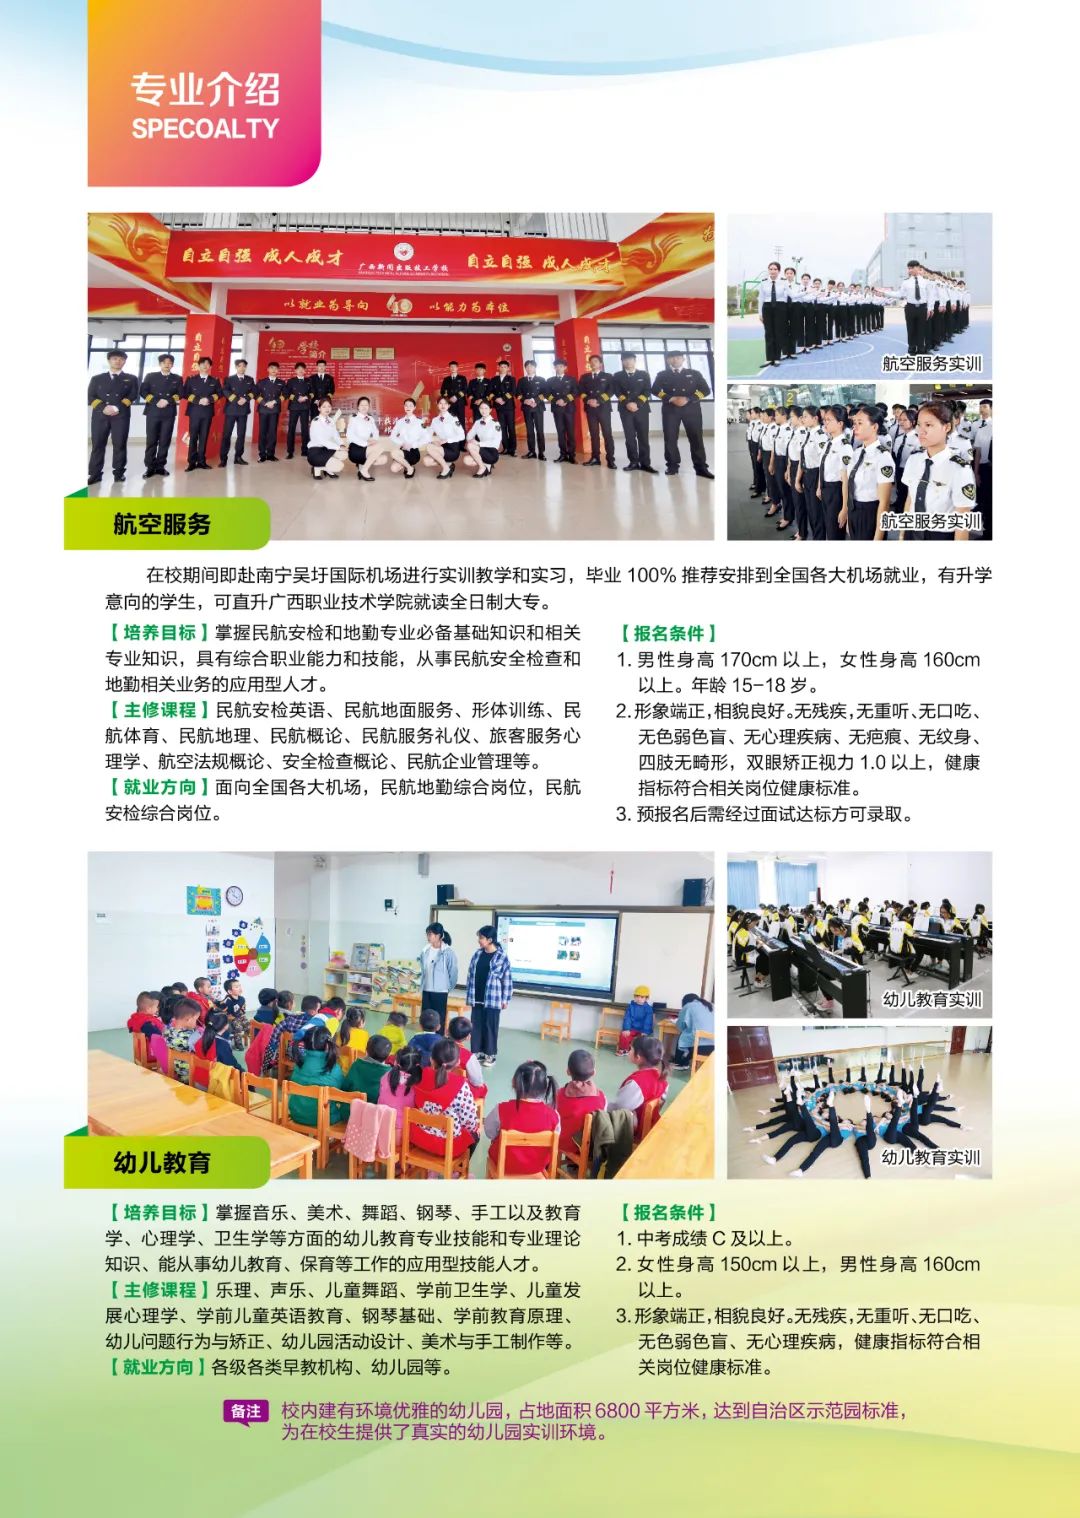 广西新闻出版技工学校2022年招生简章